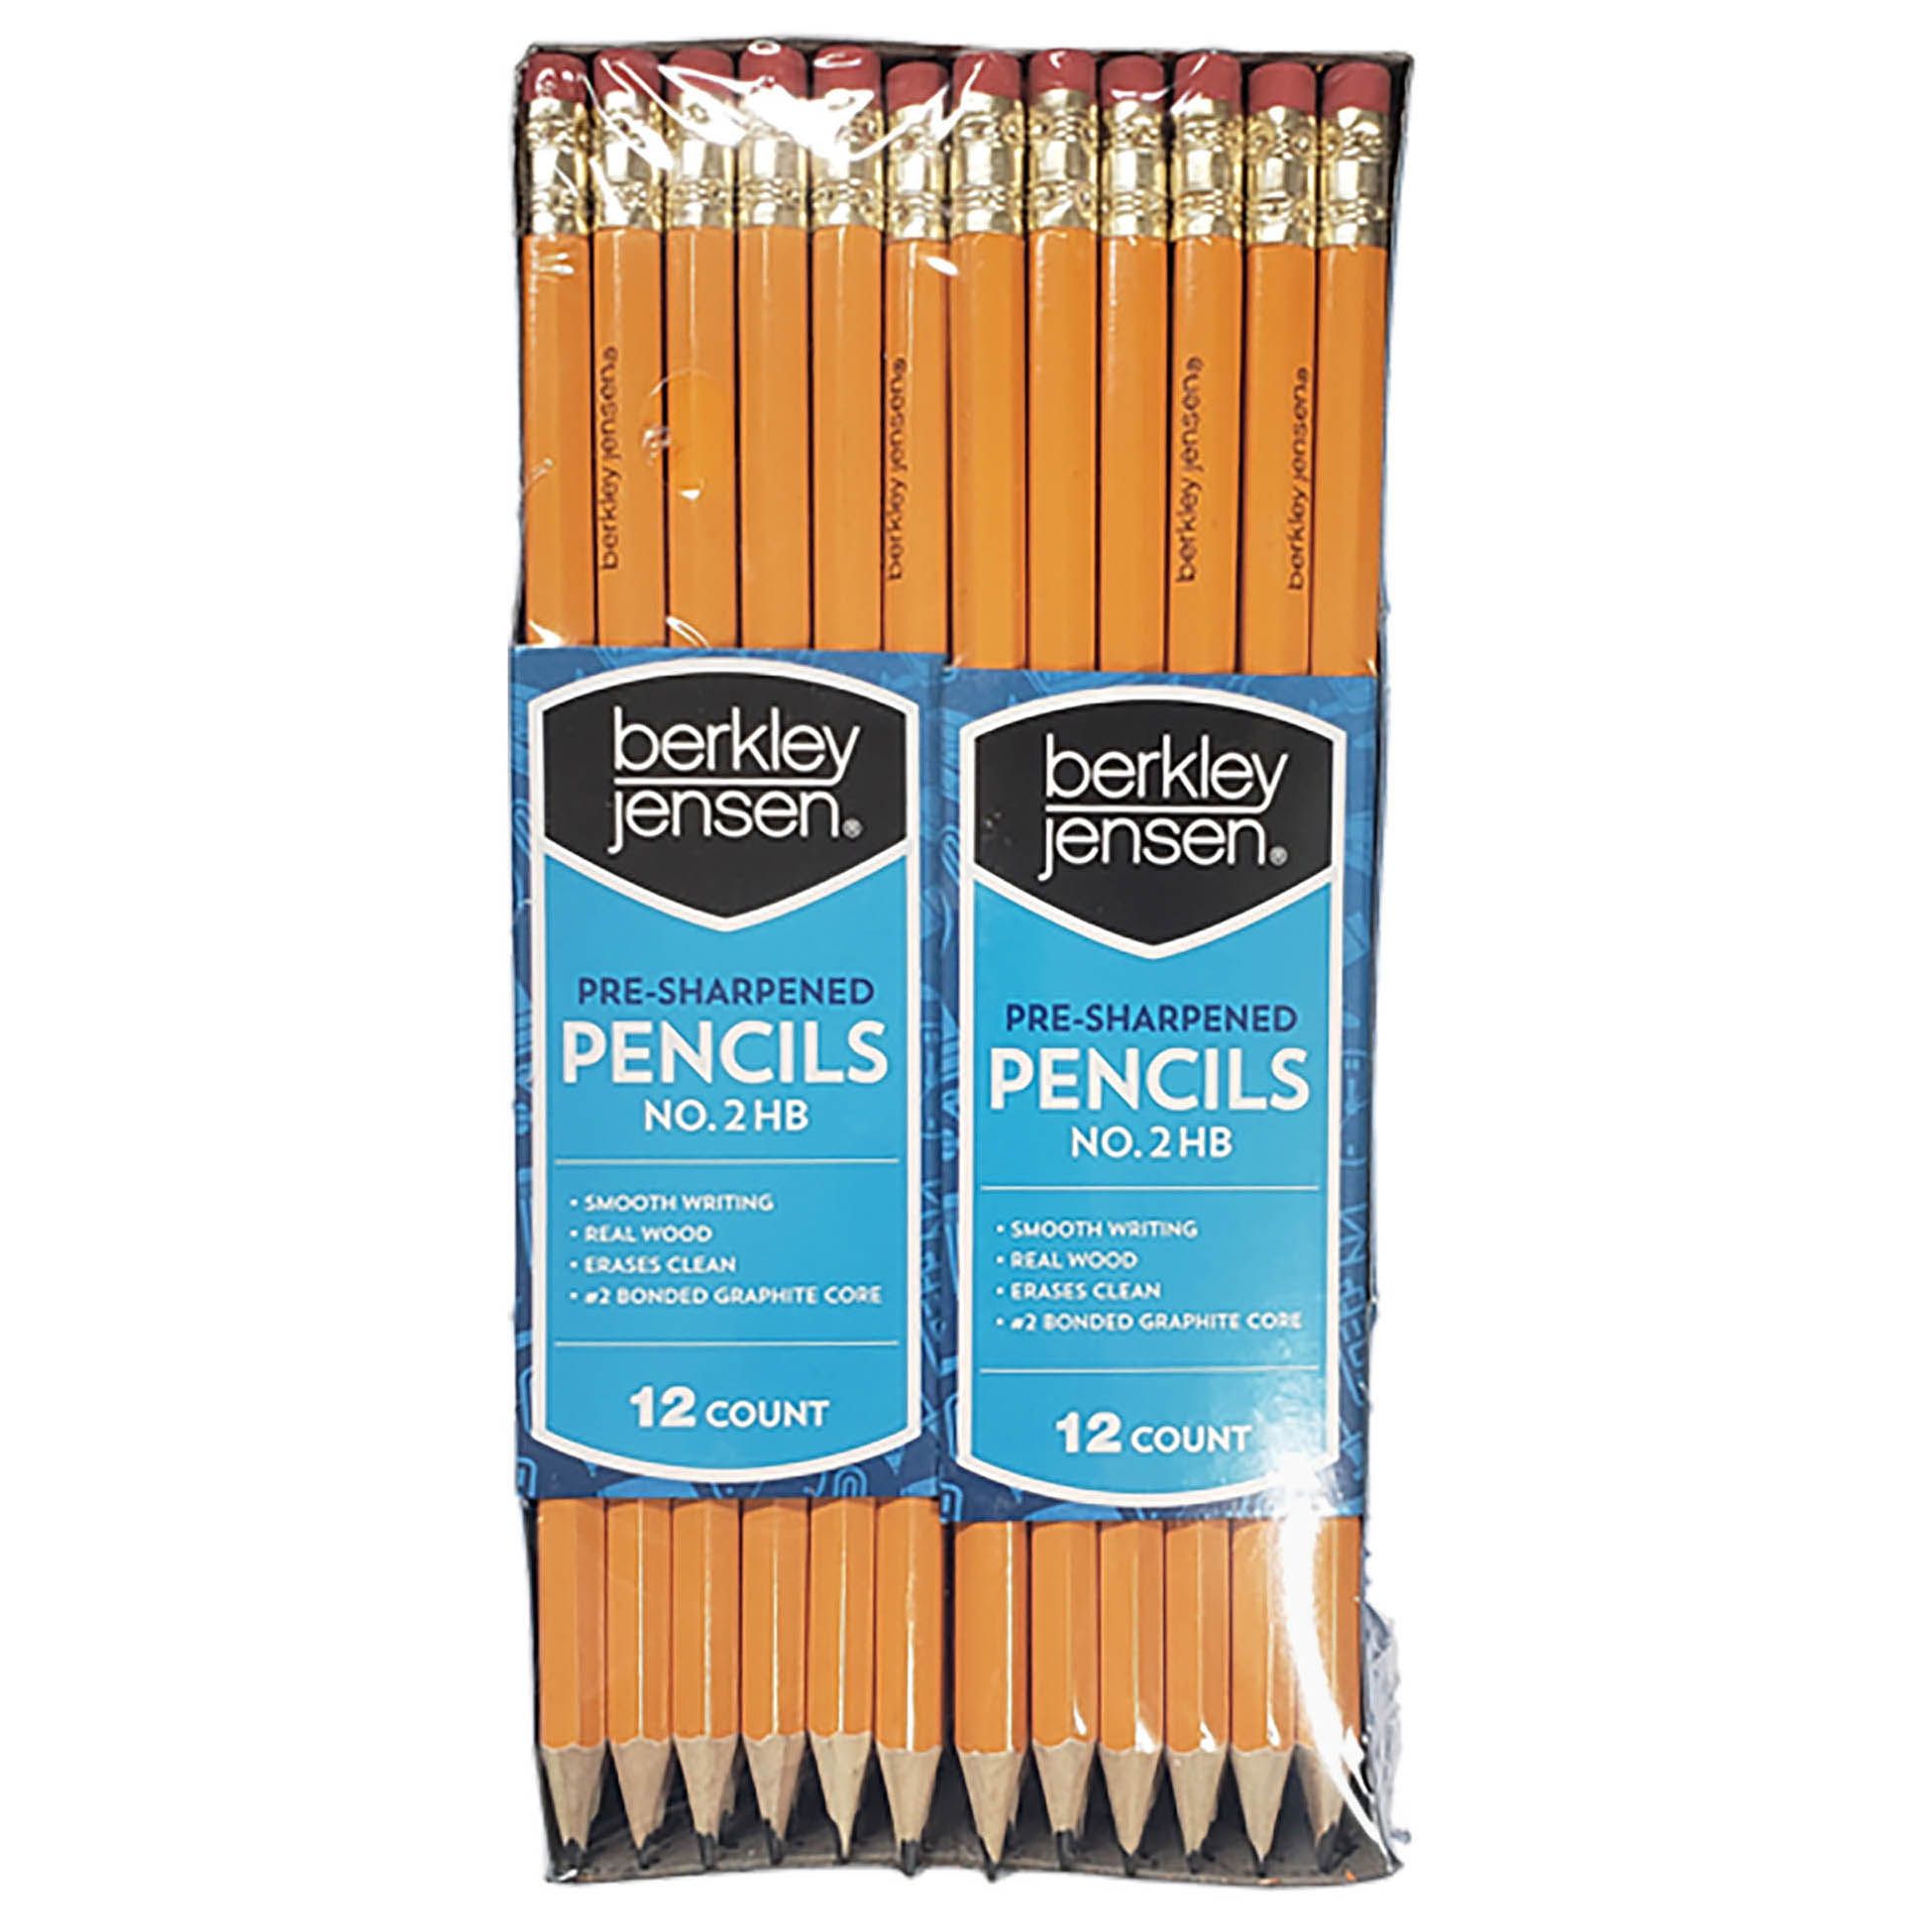 Berkley Jensen HB #2 Pencils, 96 ct.